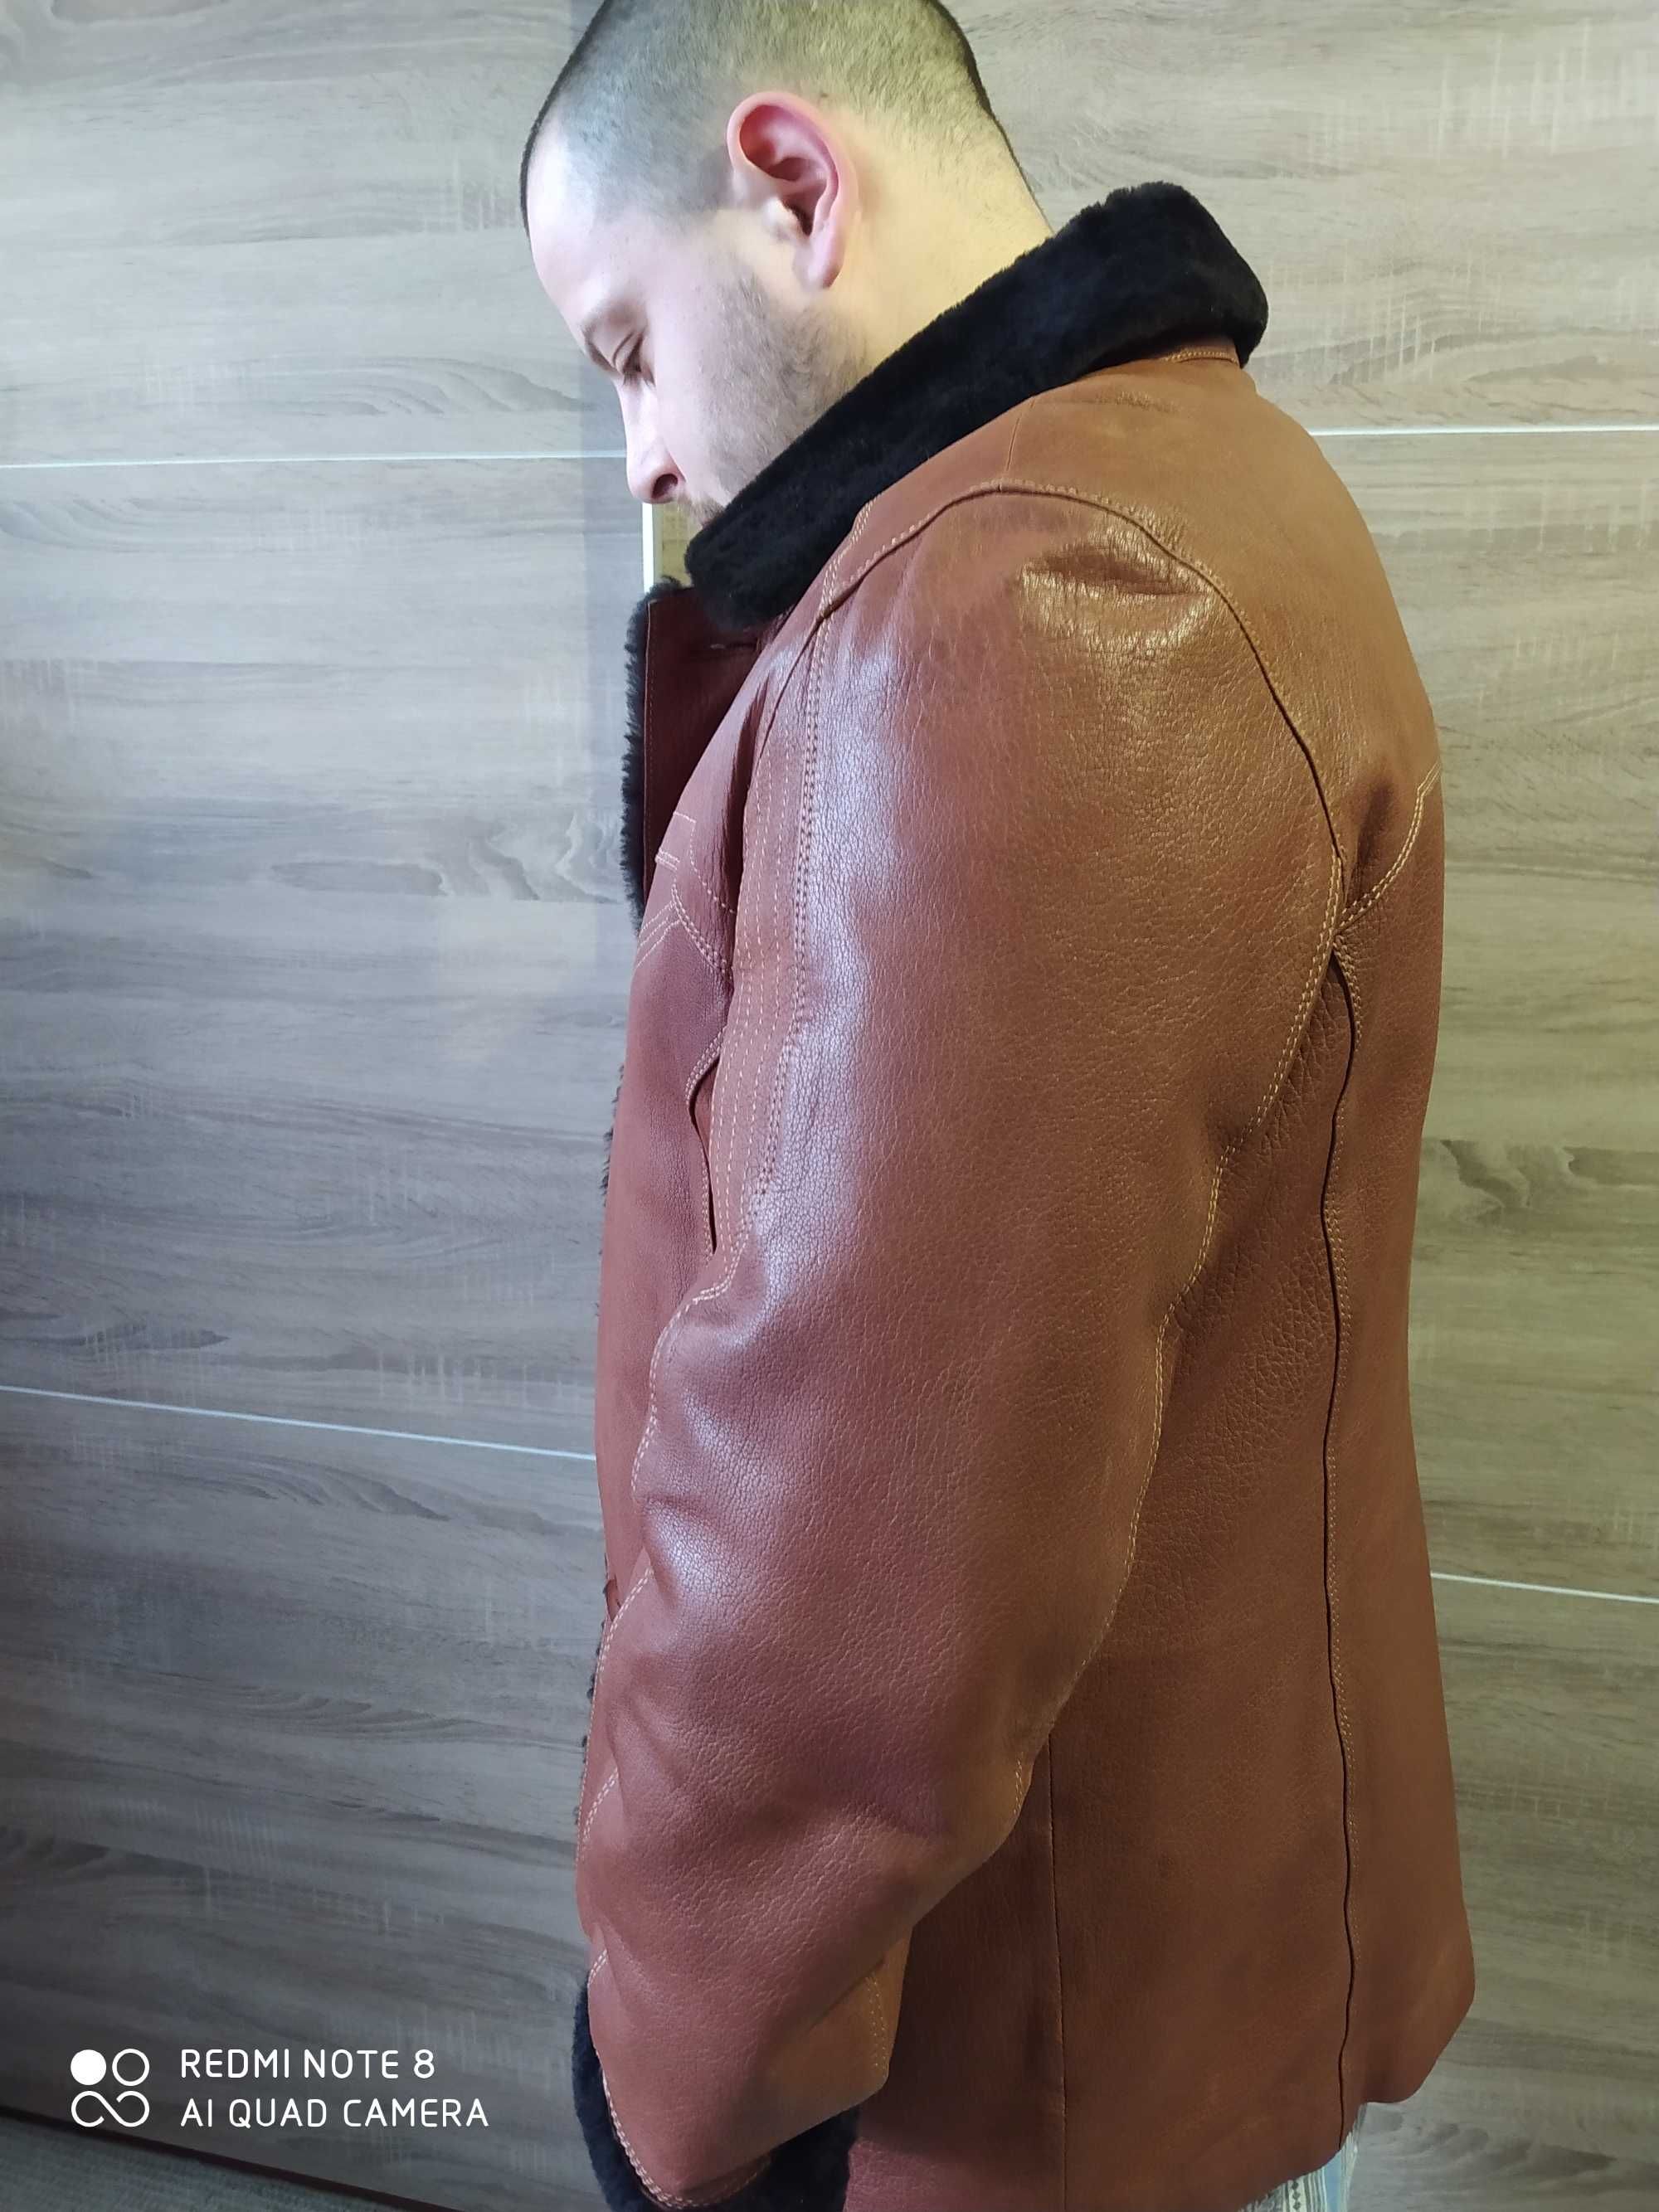 Натуральная кожаная мужская куртка